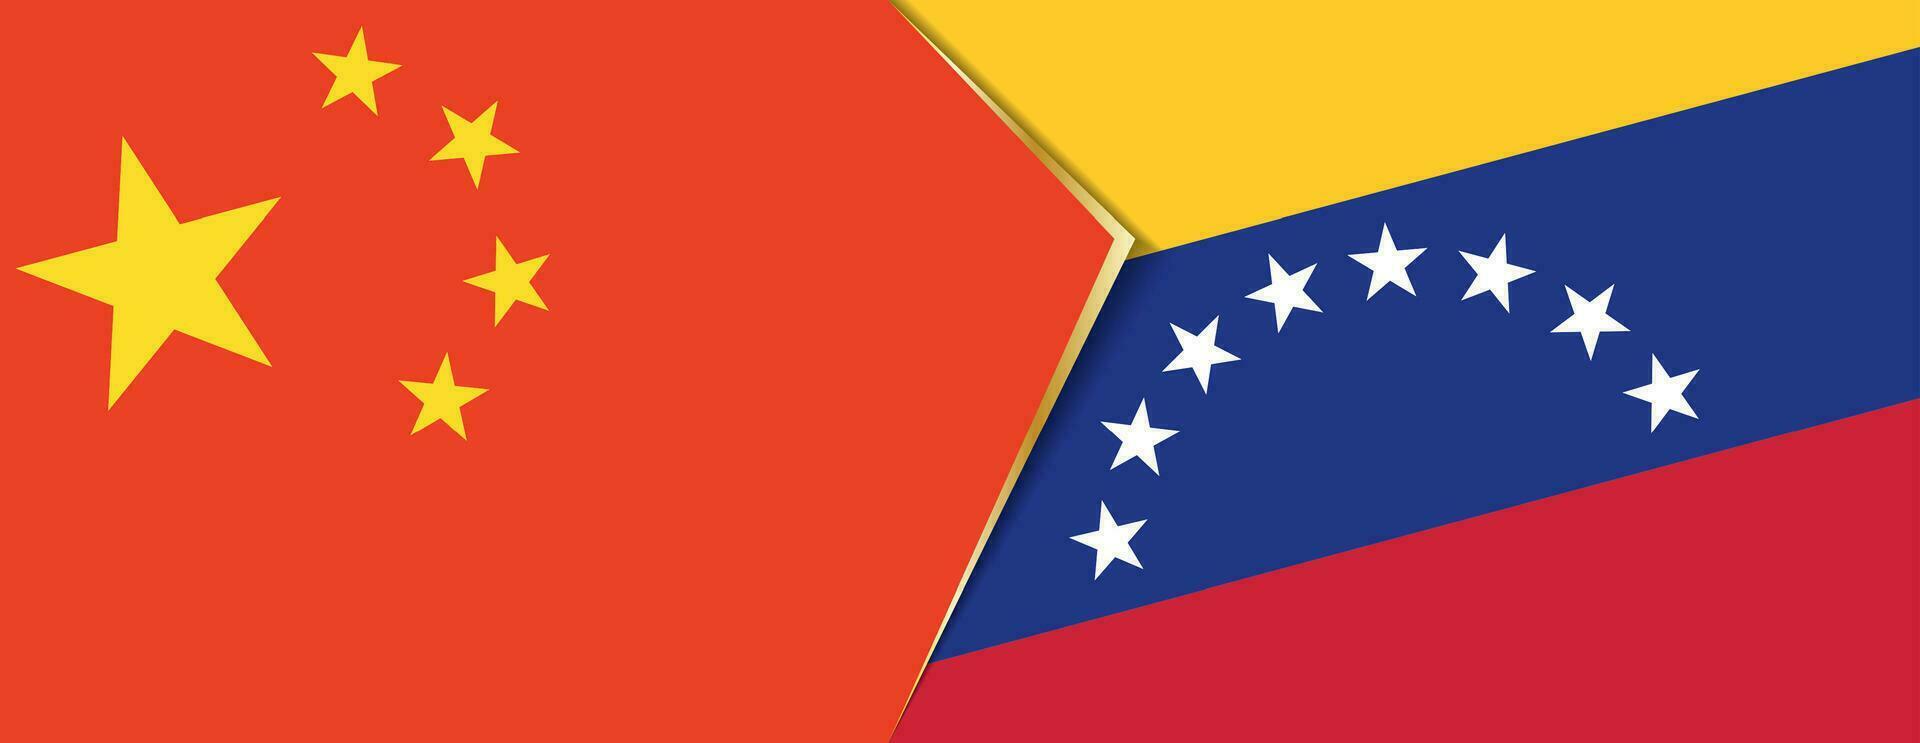 Cina e Venezuela bandiere, Due vettore bandiere.